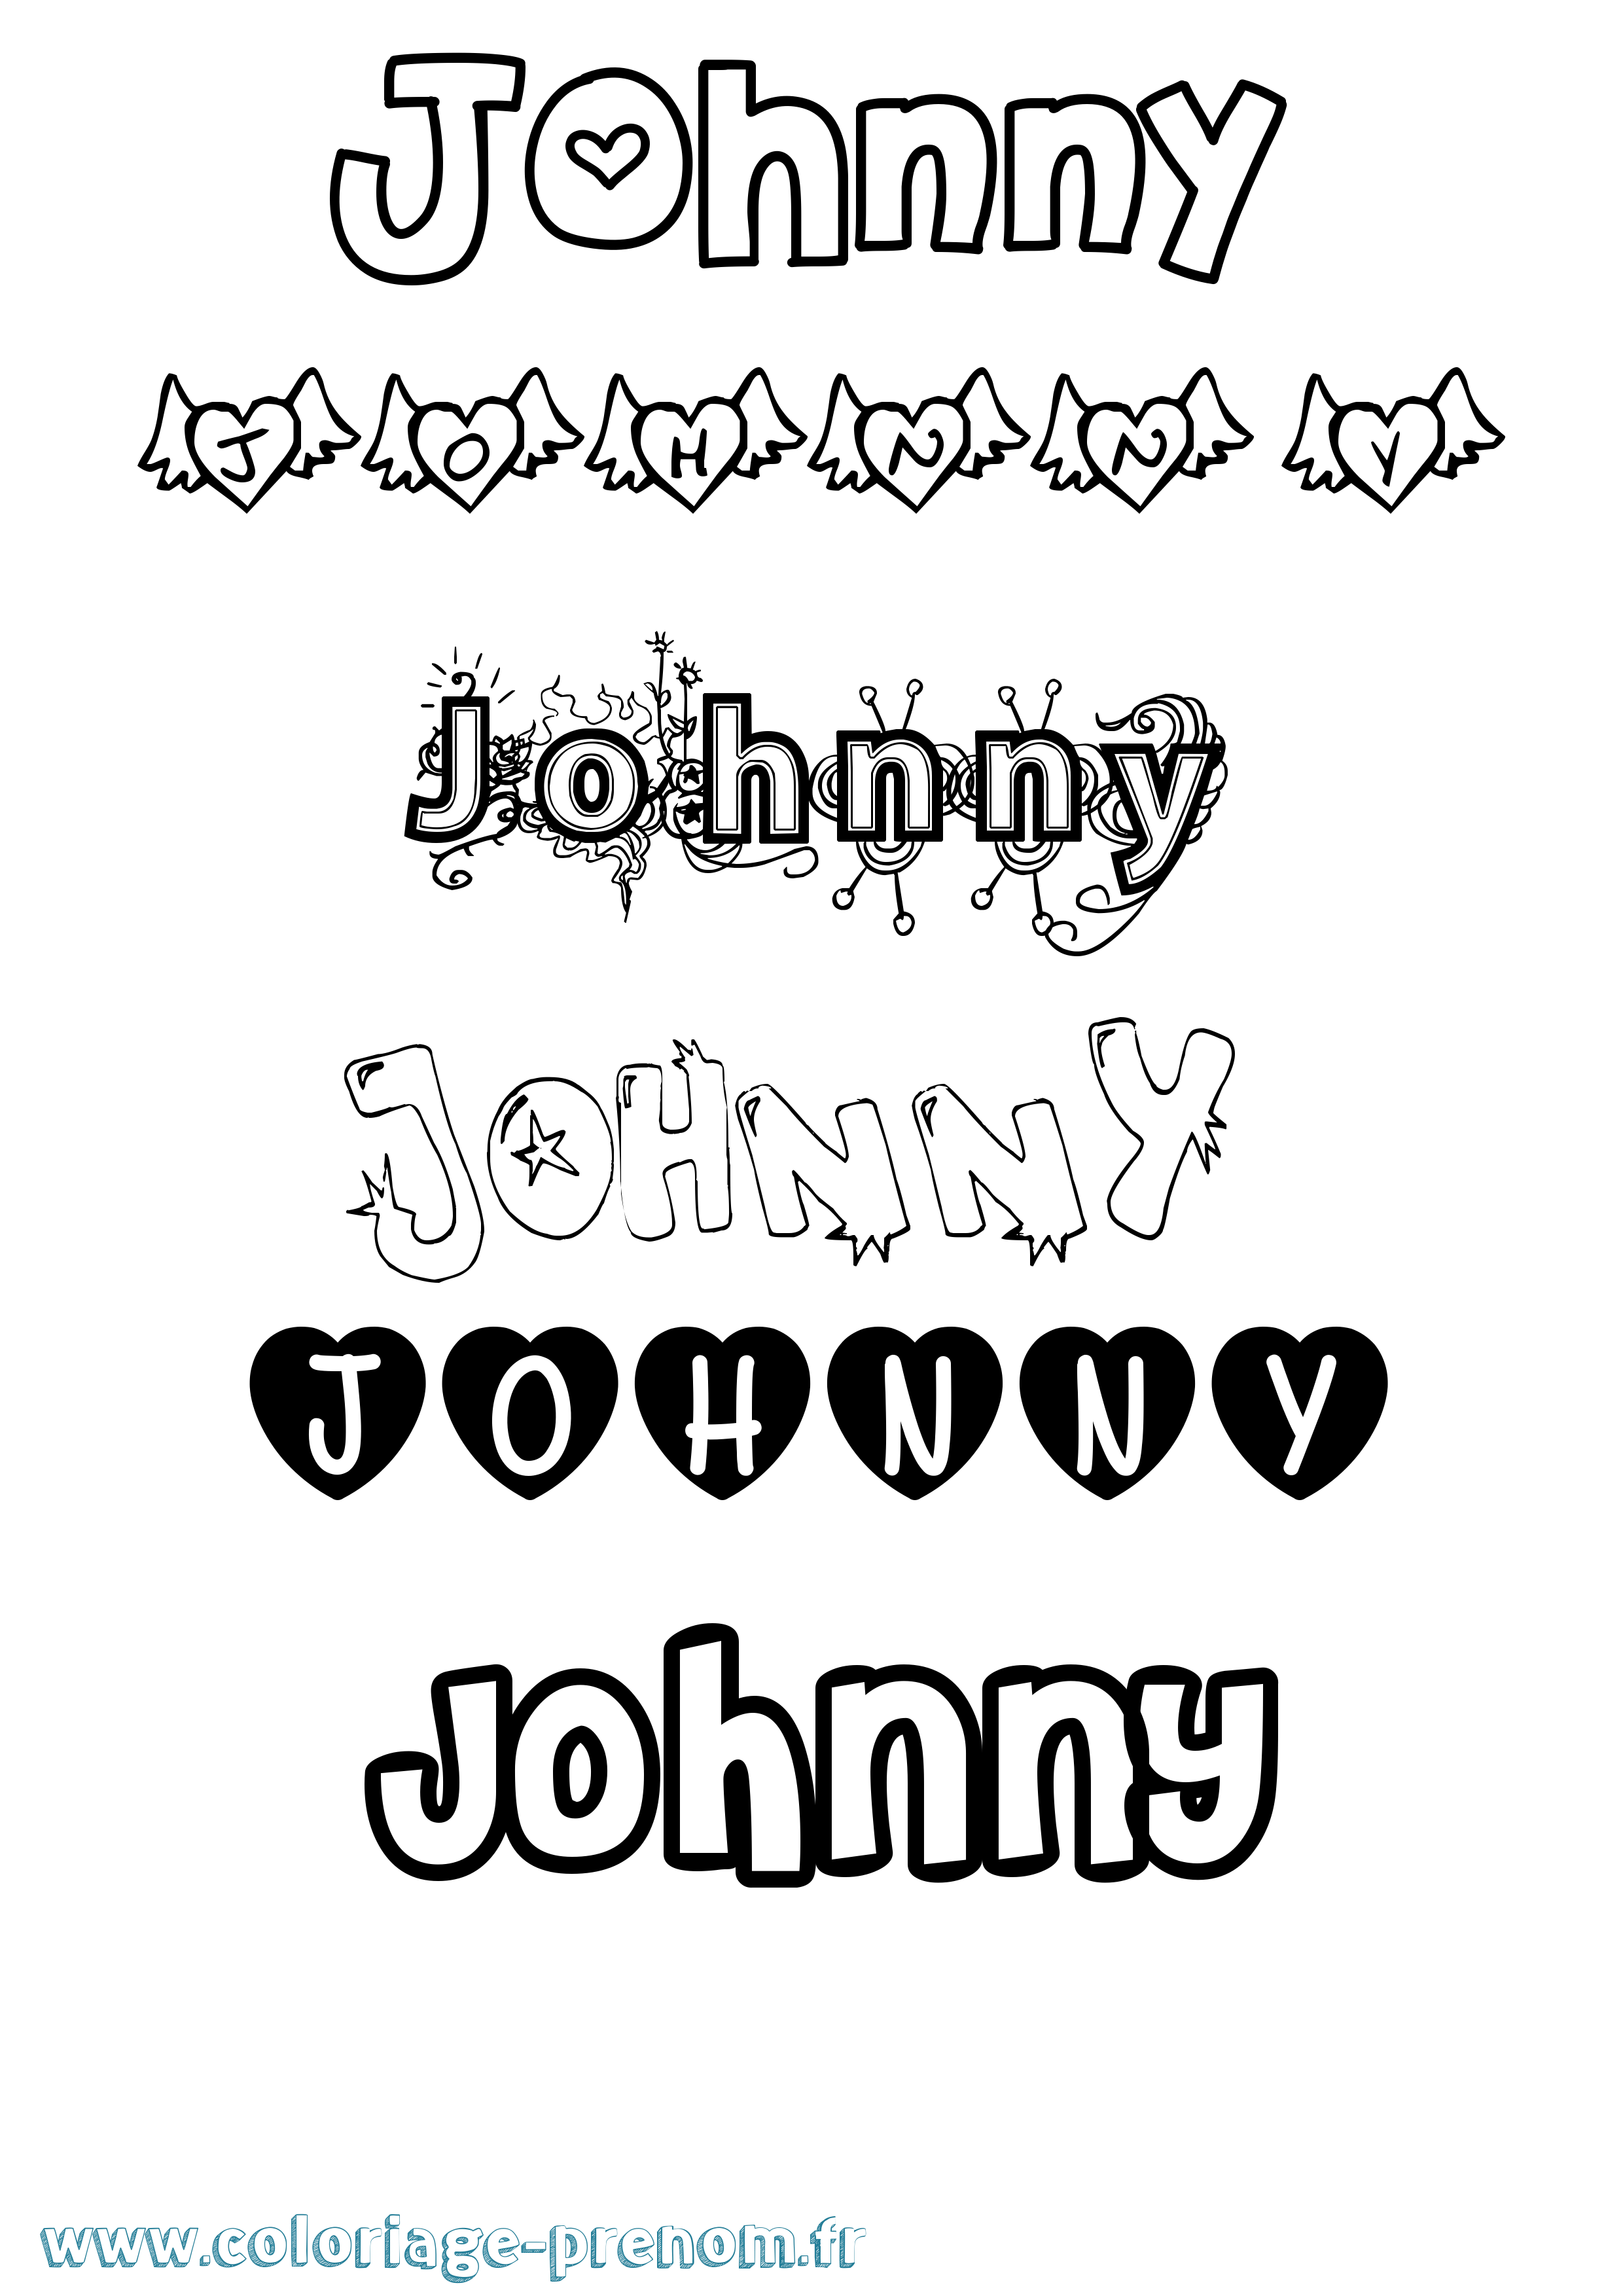 Coloriage prénom Johnny